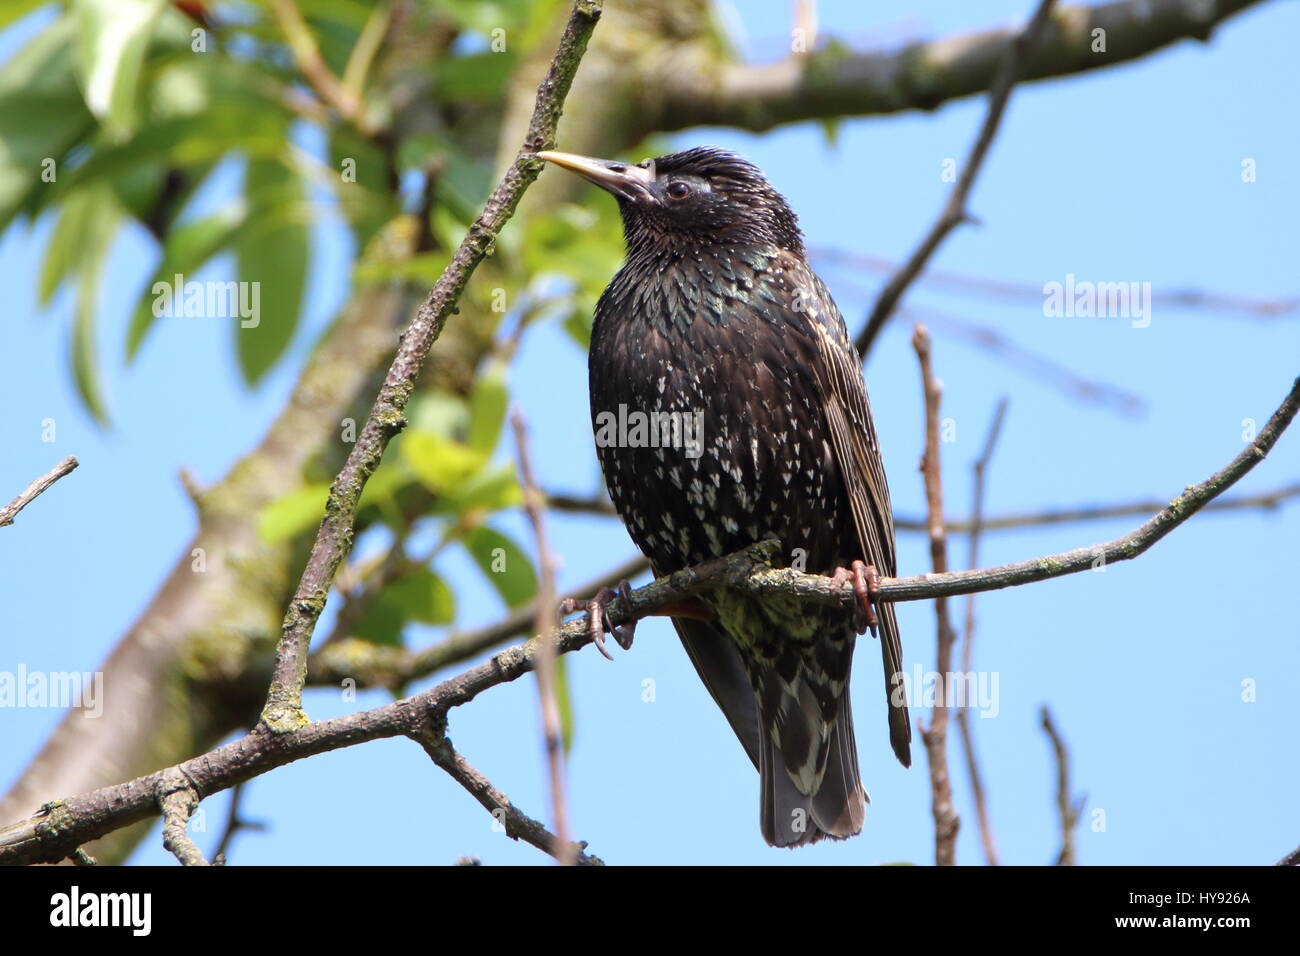 Die Rod Stewart Frisur der Vogelwelt! Starling, Stumus vulgarise, in einem Garten Baum. Großbritannien Stockfoto